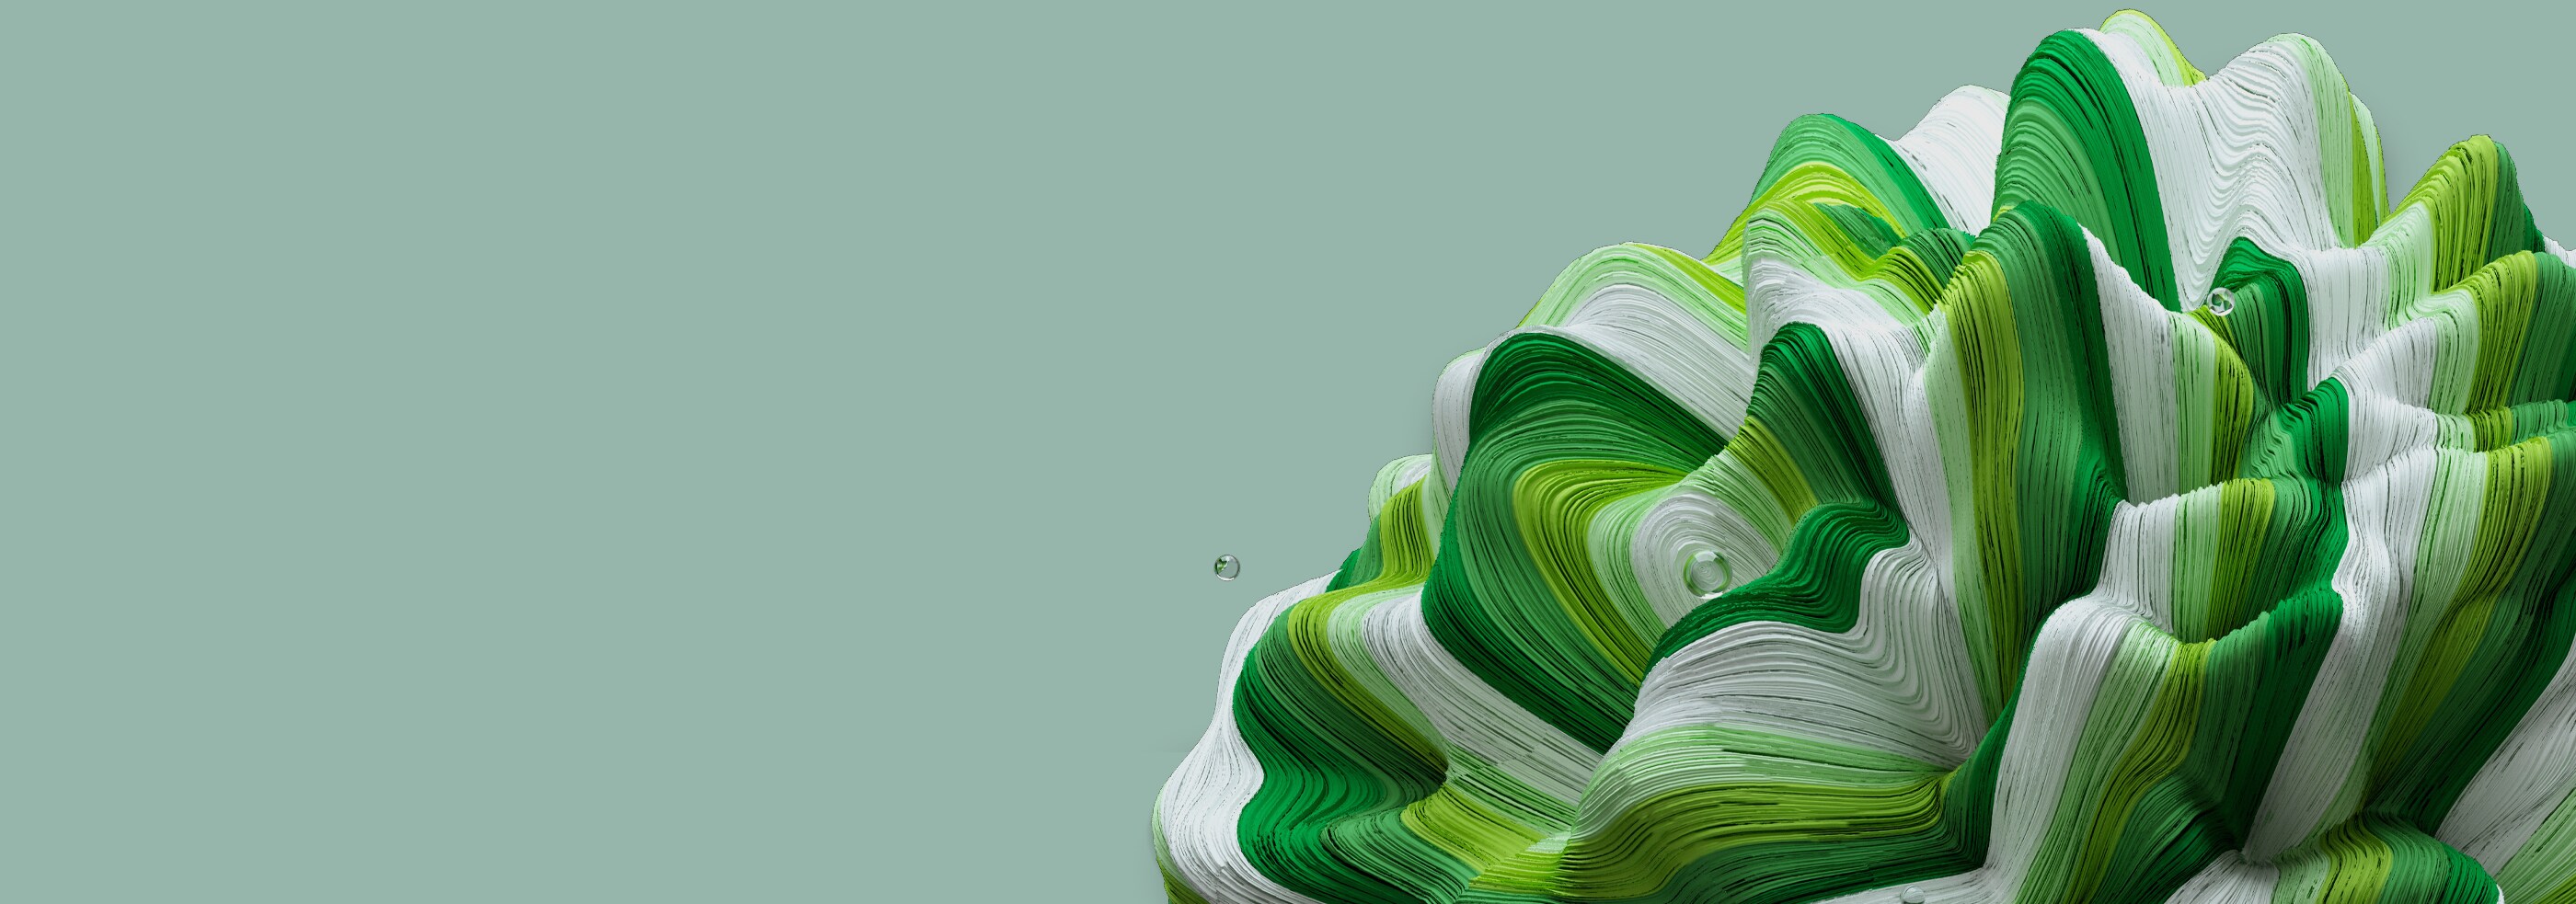 綠色和白色花朵呈扭曲圓形的抽象圖案